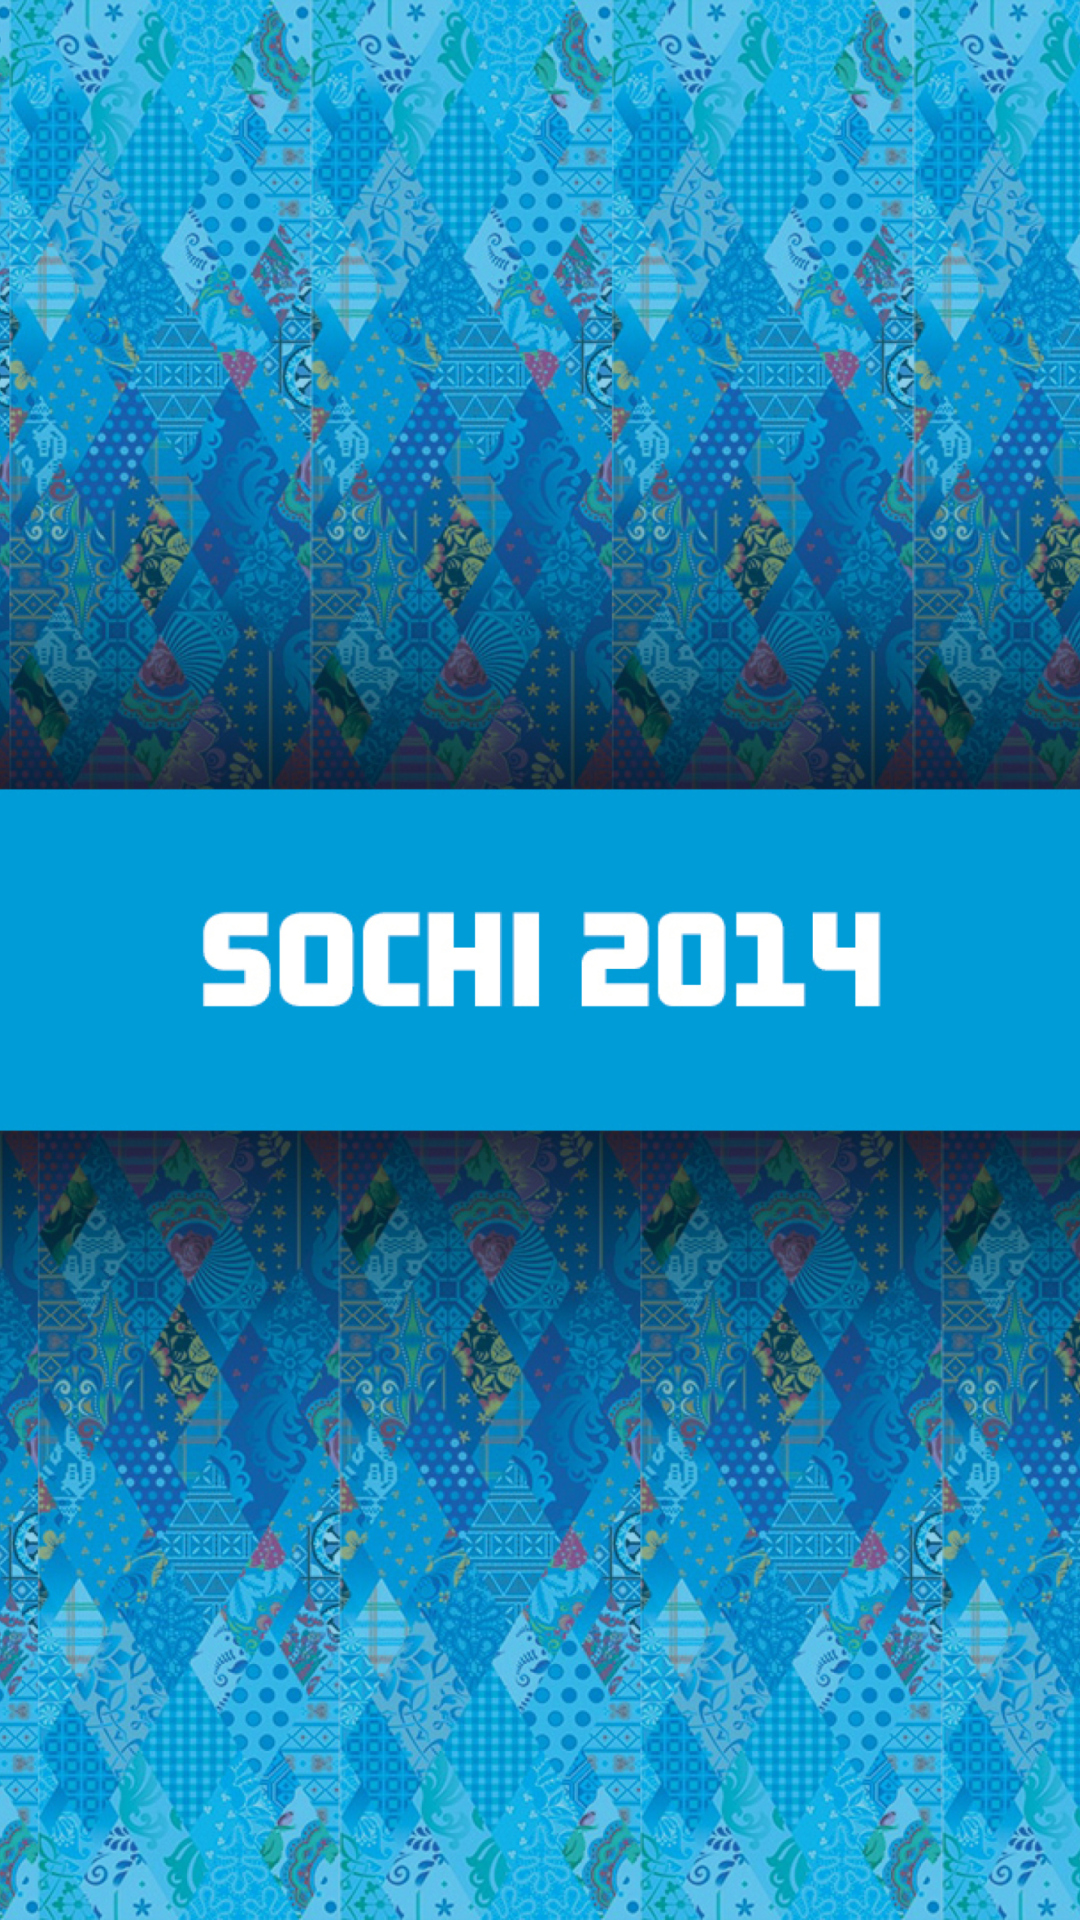 Sochi 2014 wallpaper 1080x1920